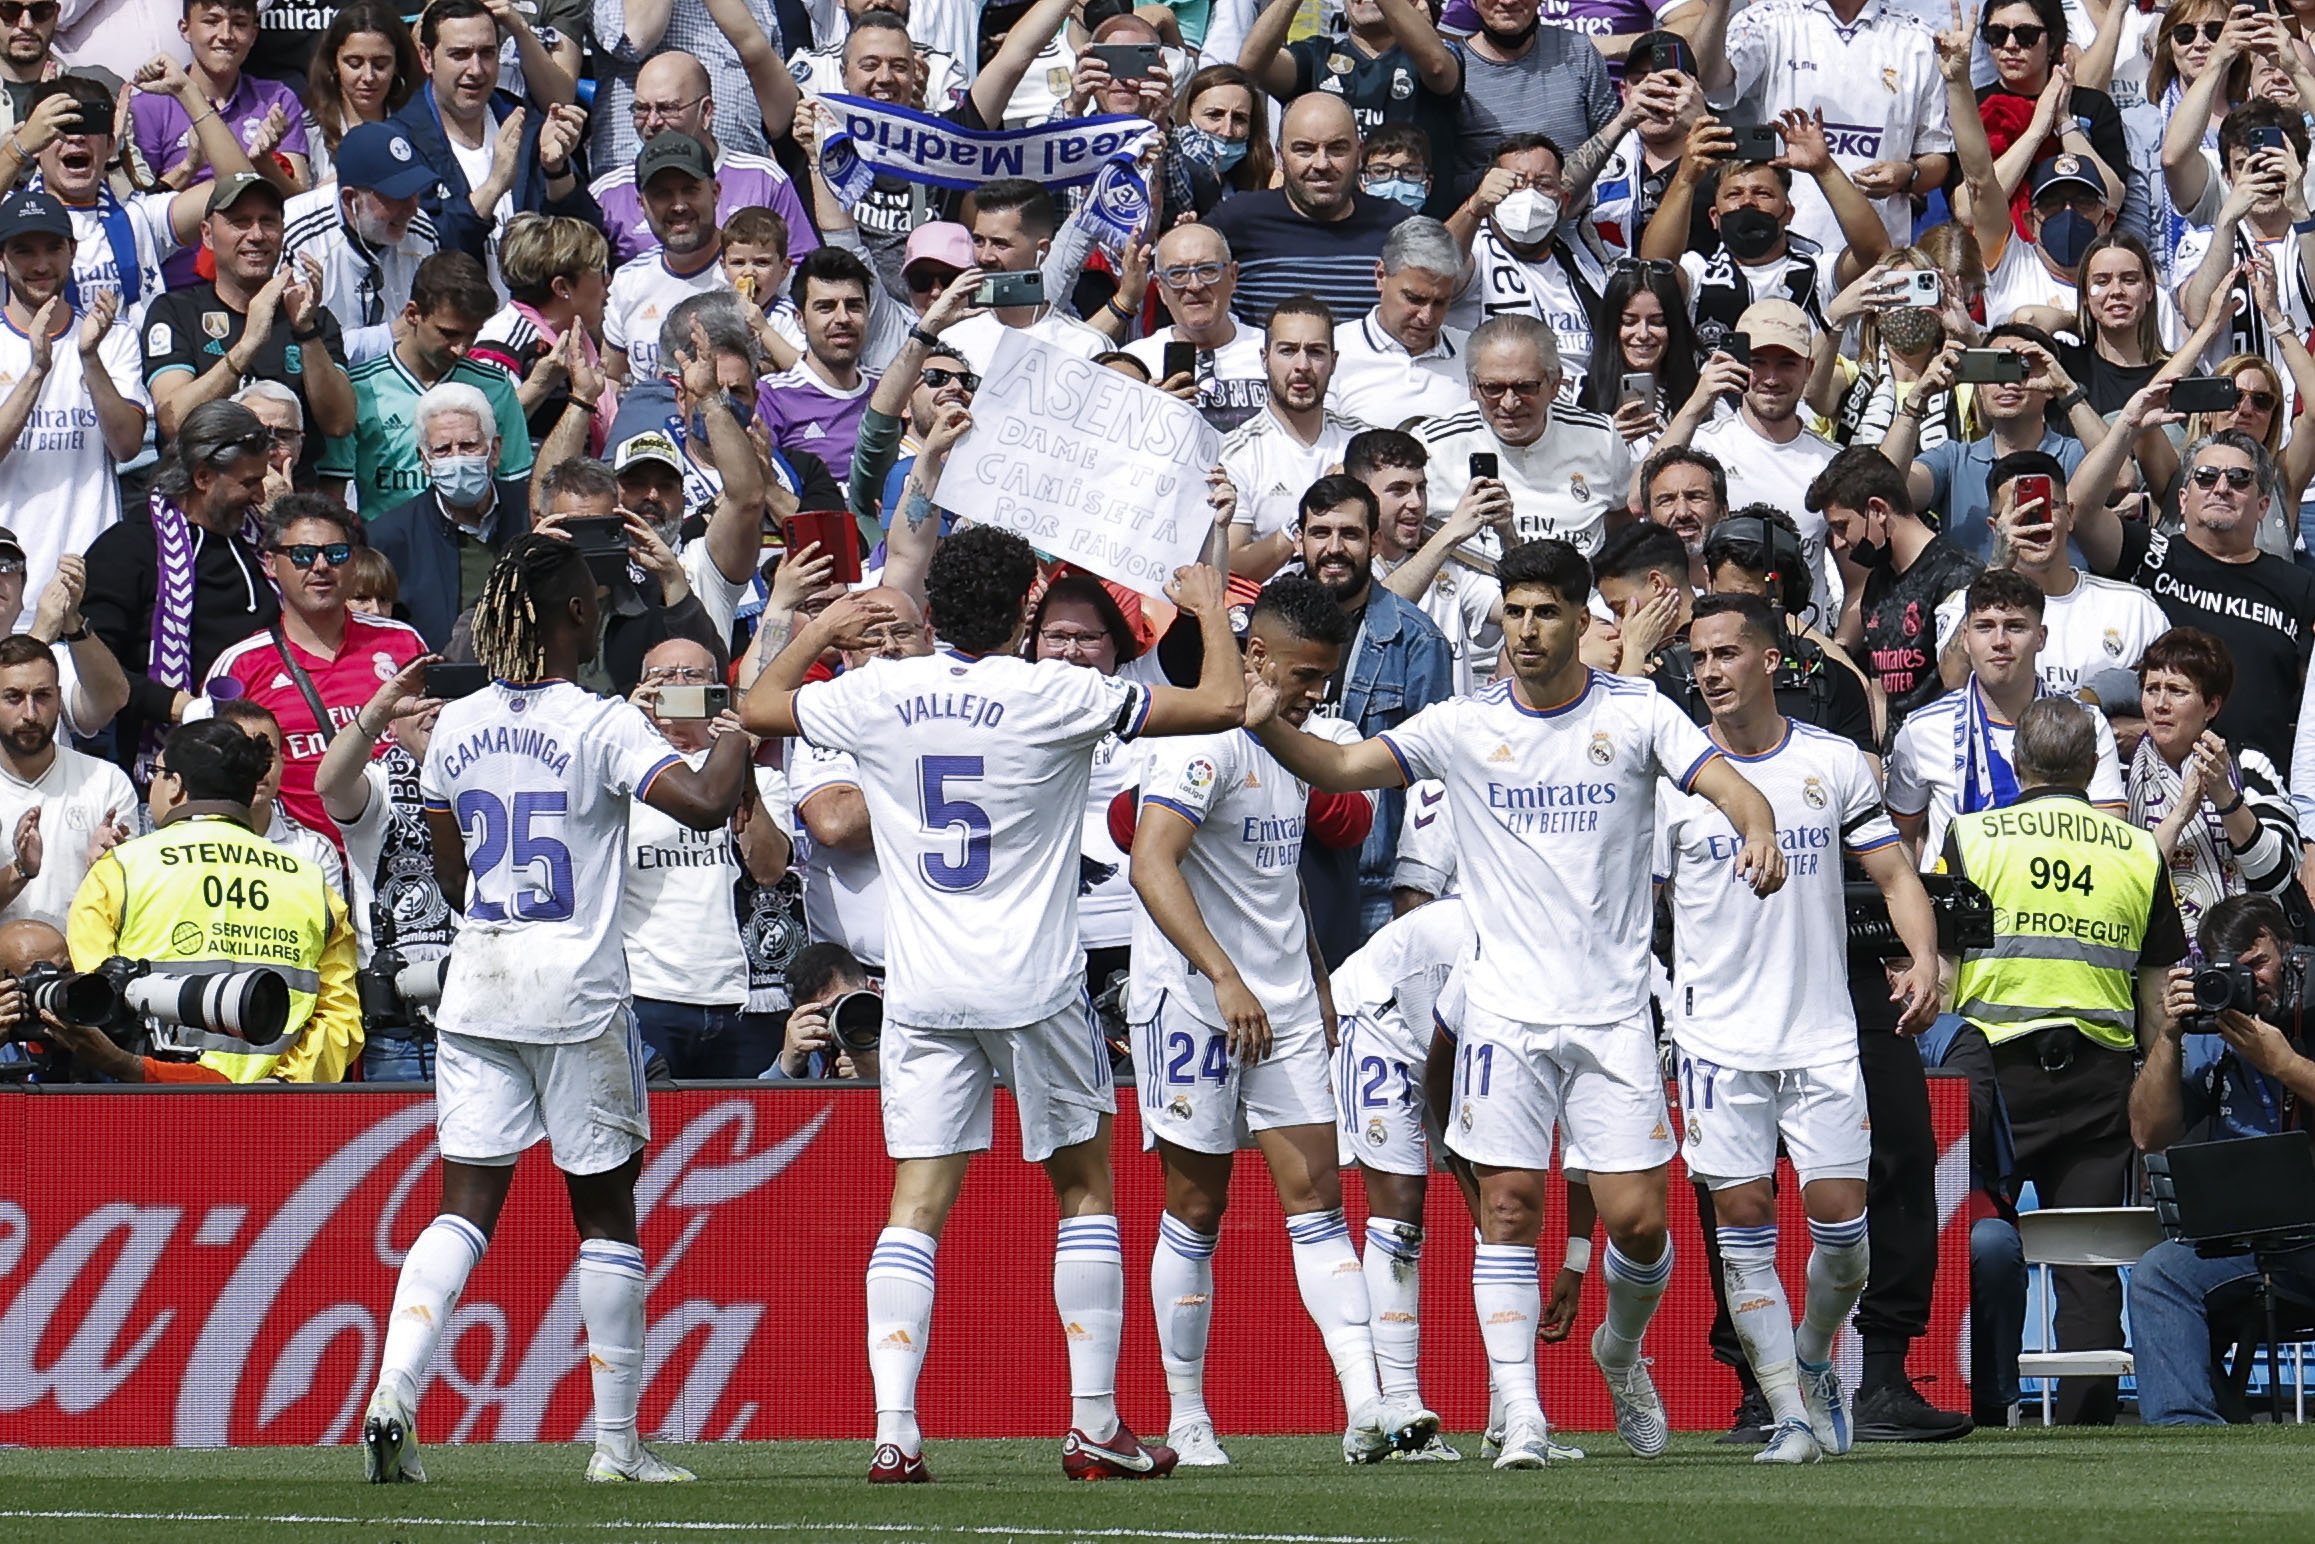 El Real Madrid golea sin problemas a un inofensivo Espanyol (4-0) y se proclama campeón de Liga